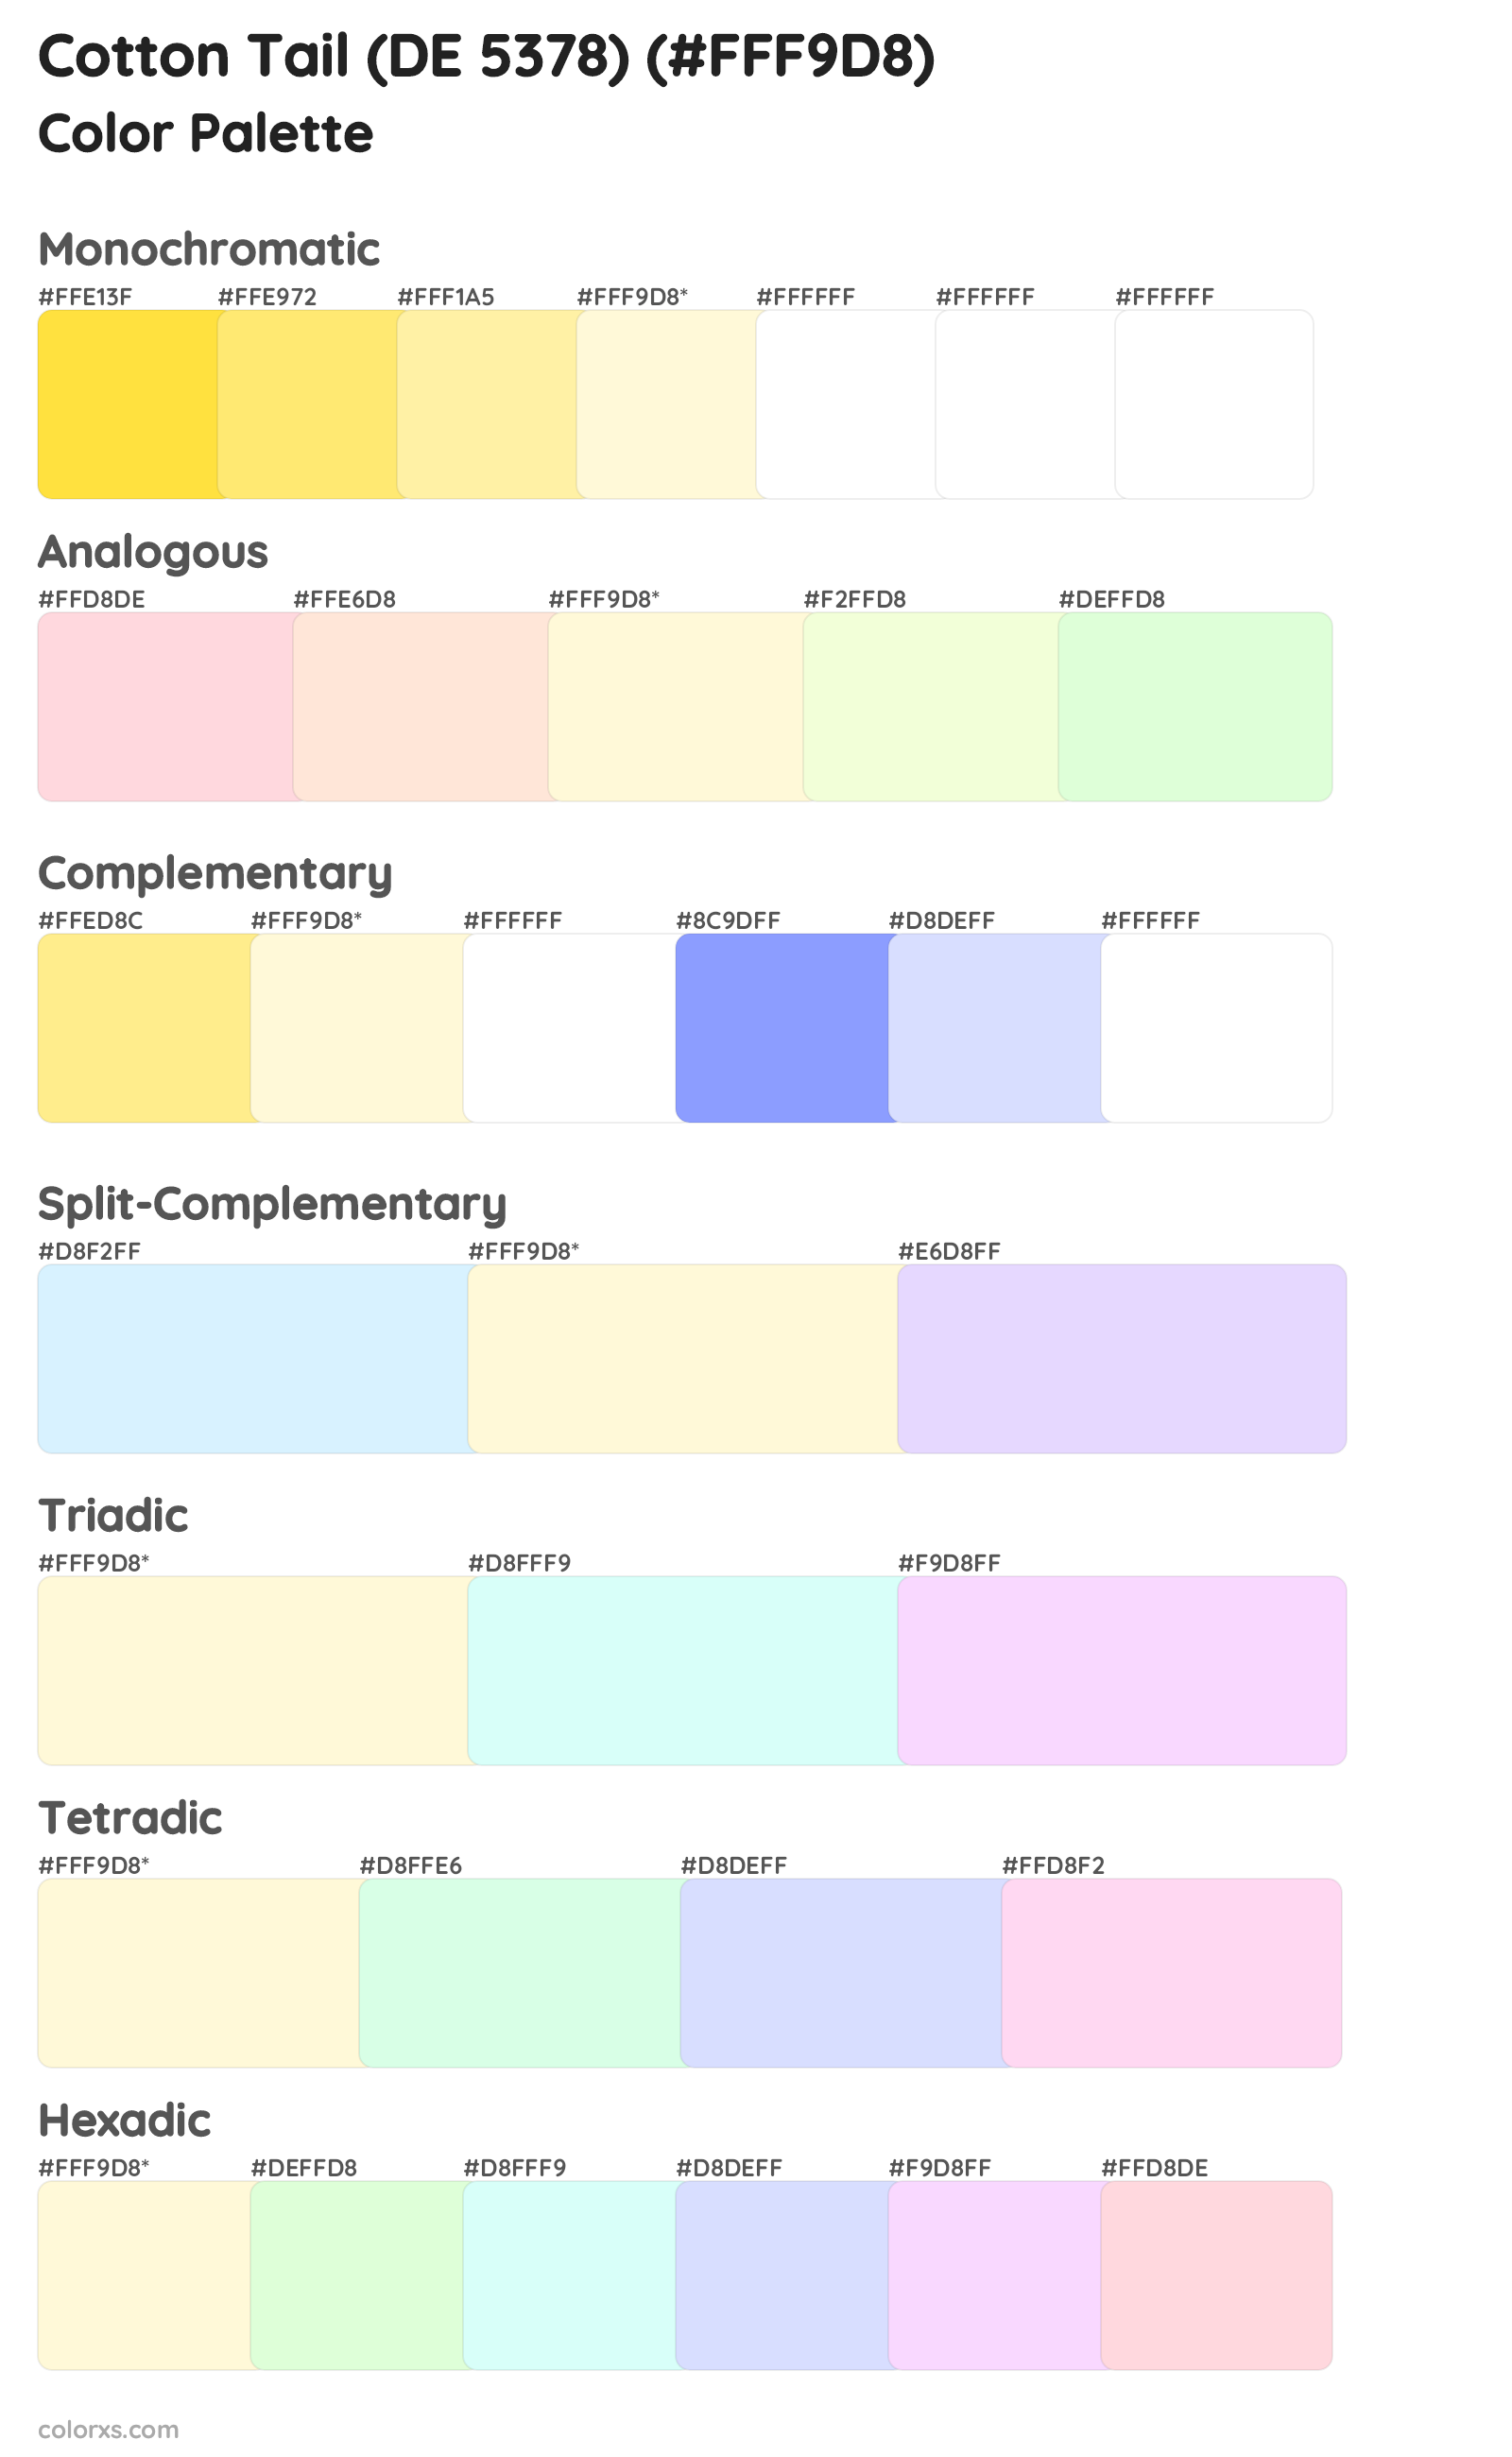 Cotton Tail (DE 5378) Color Scheme Palettes